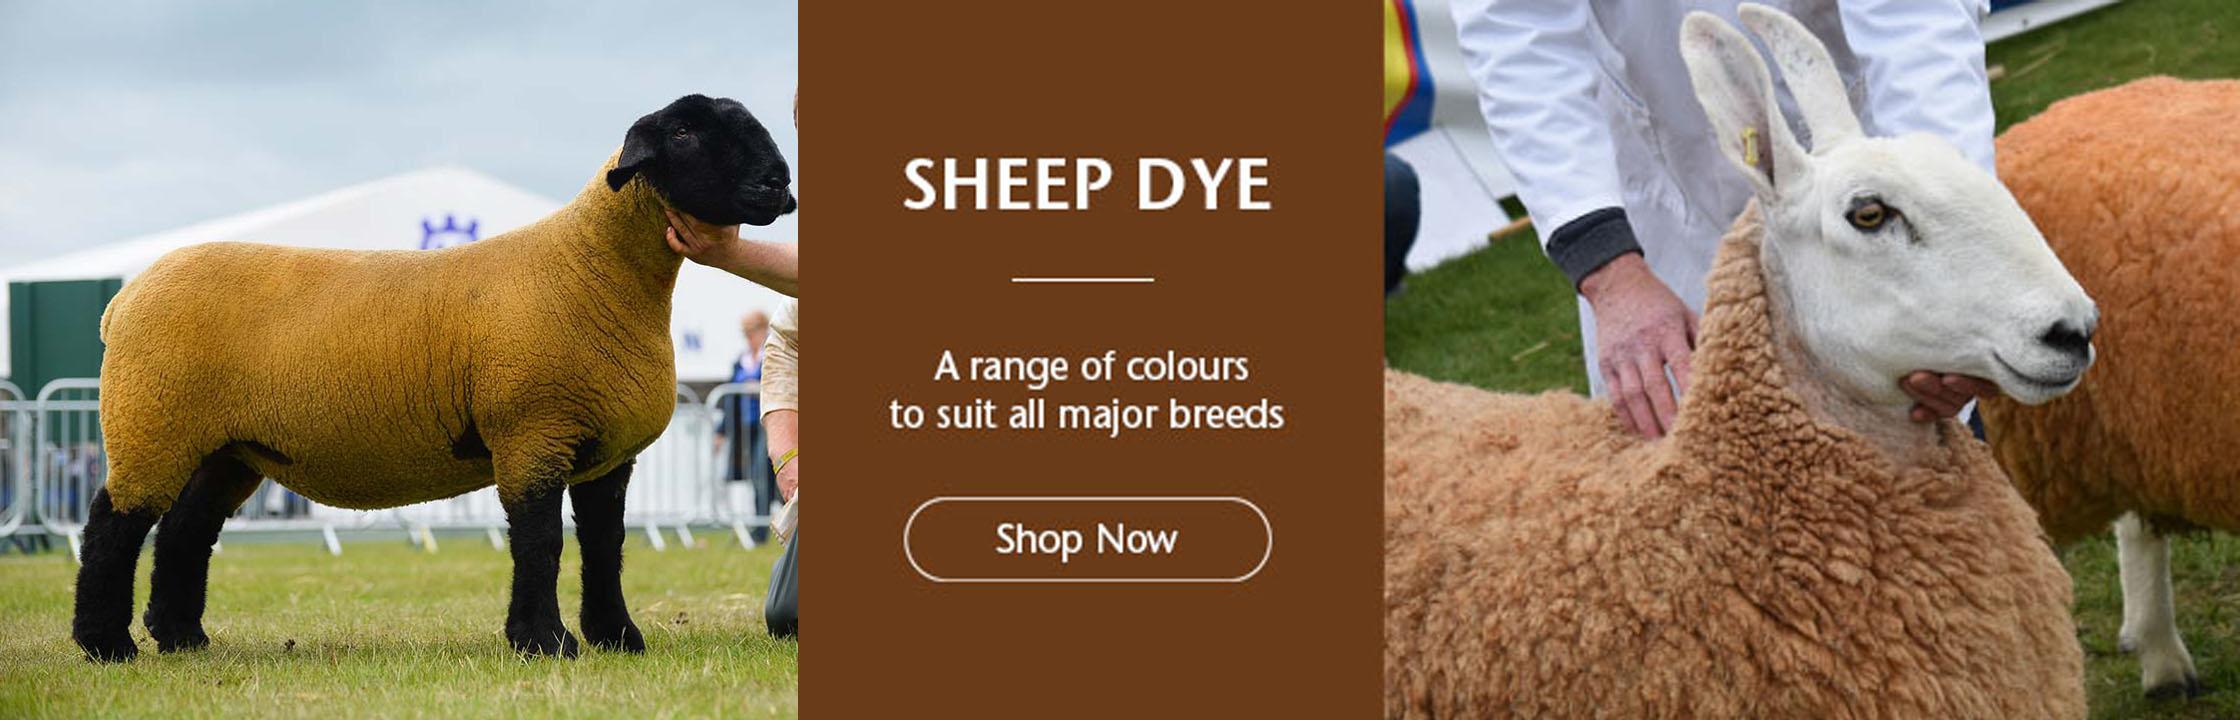 Sheep Dye